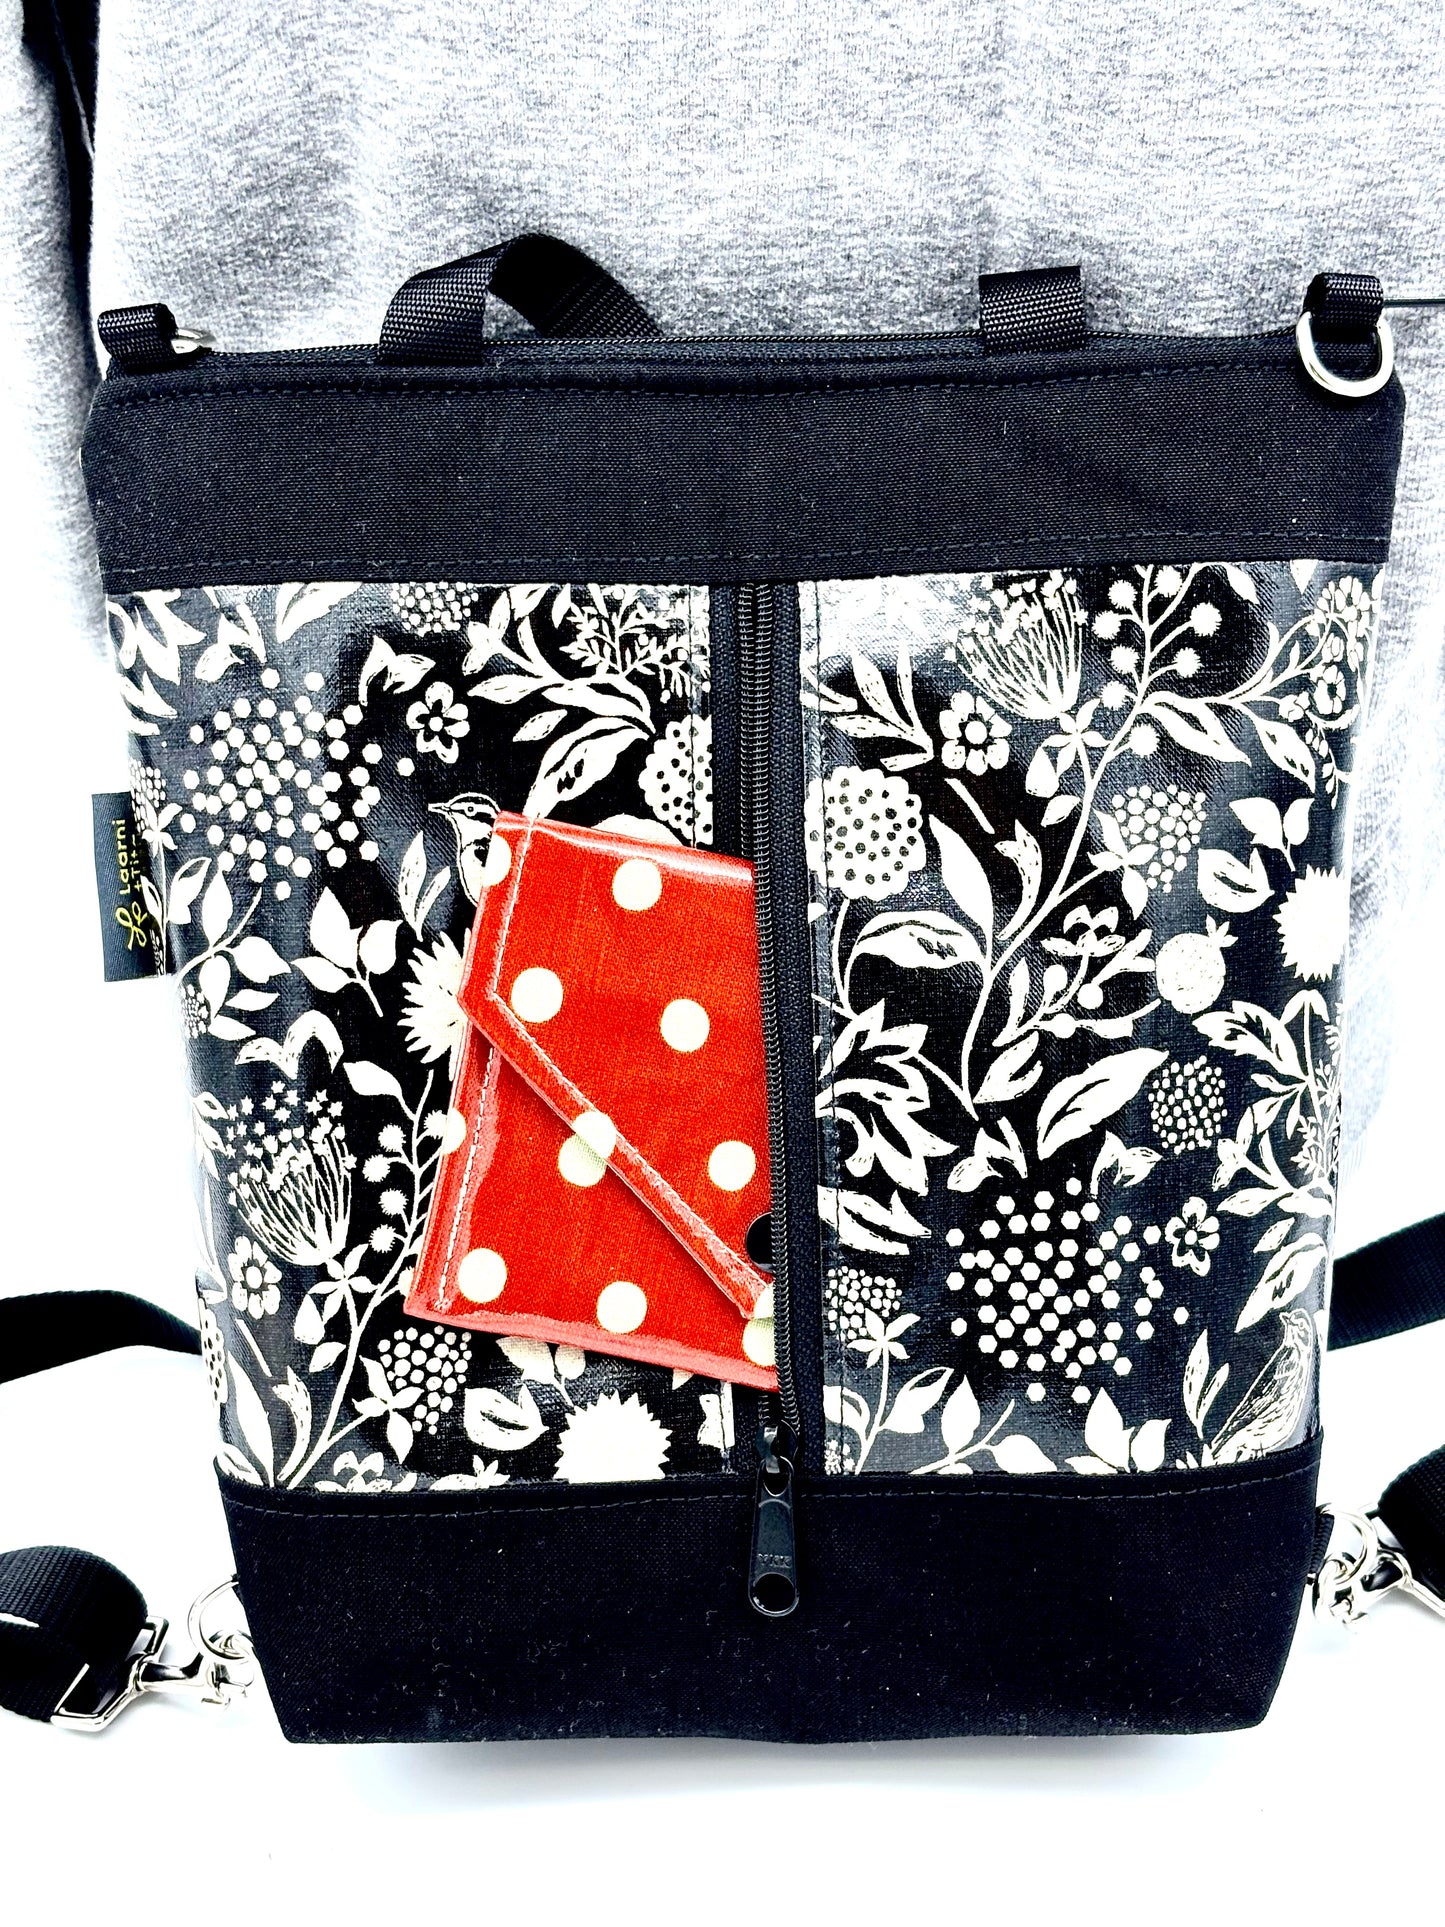 Backpack/Crossbody in Wildflowers black & cream